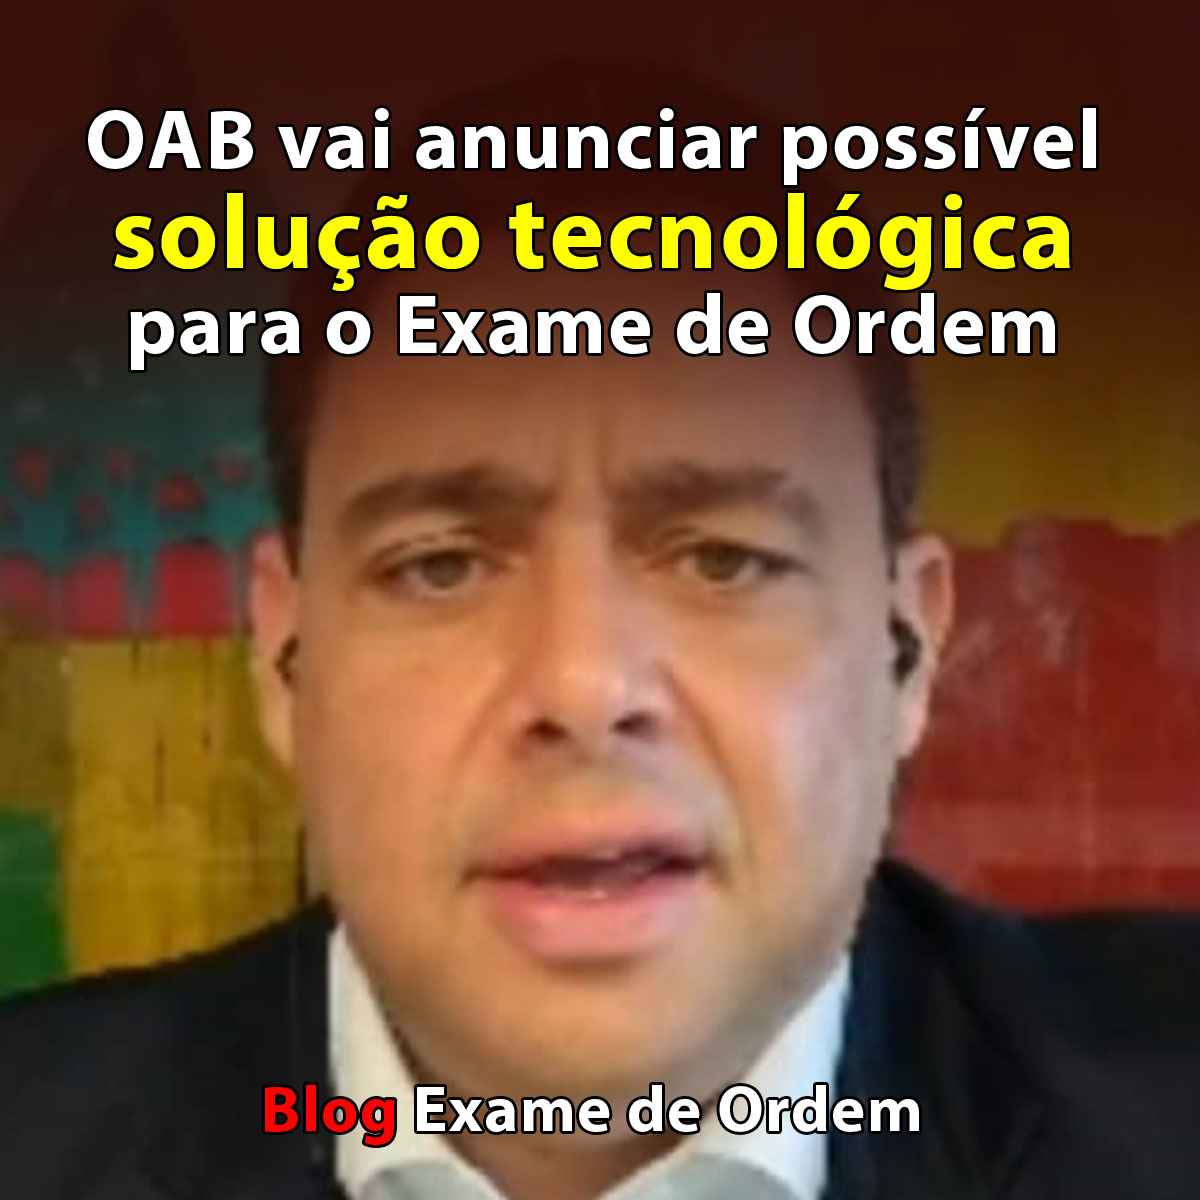 OAB vai anunciar possível solução tecnológica para o Exame de Ordem